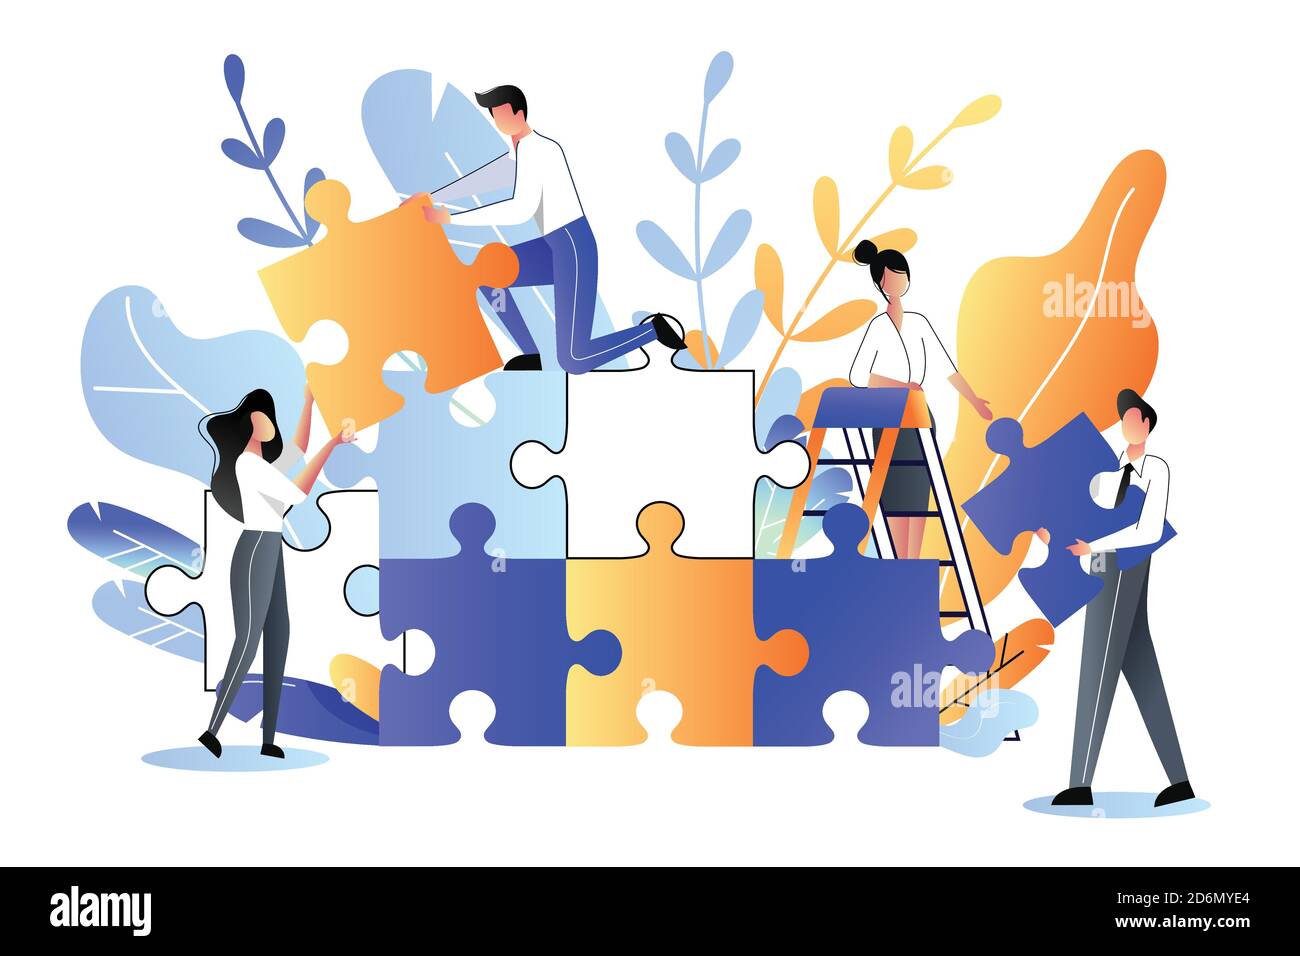 Junge Leute sammeln Multicolor Puzzle. Vektorgrafik flach. Entwicklung, Teamarbeit und Partnerschaft Business Metapher. Stock Vektor